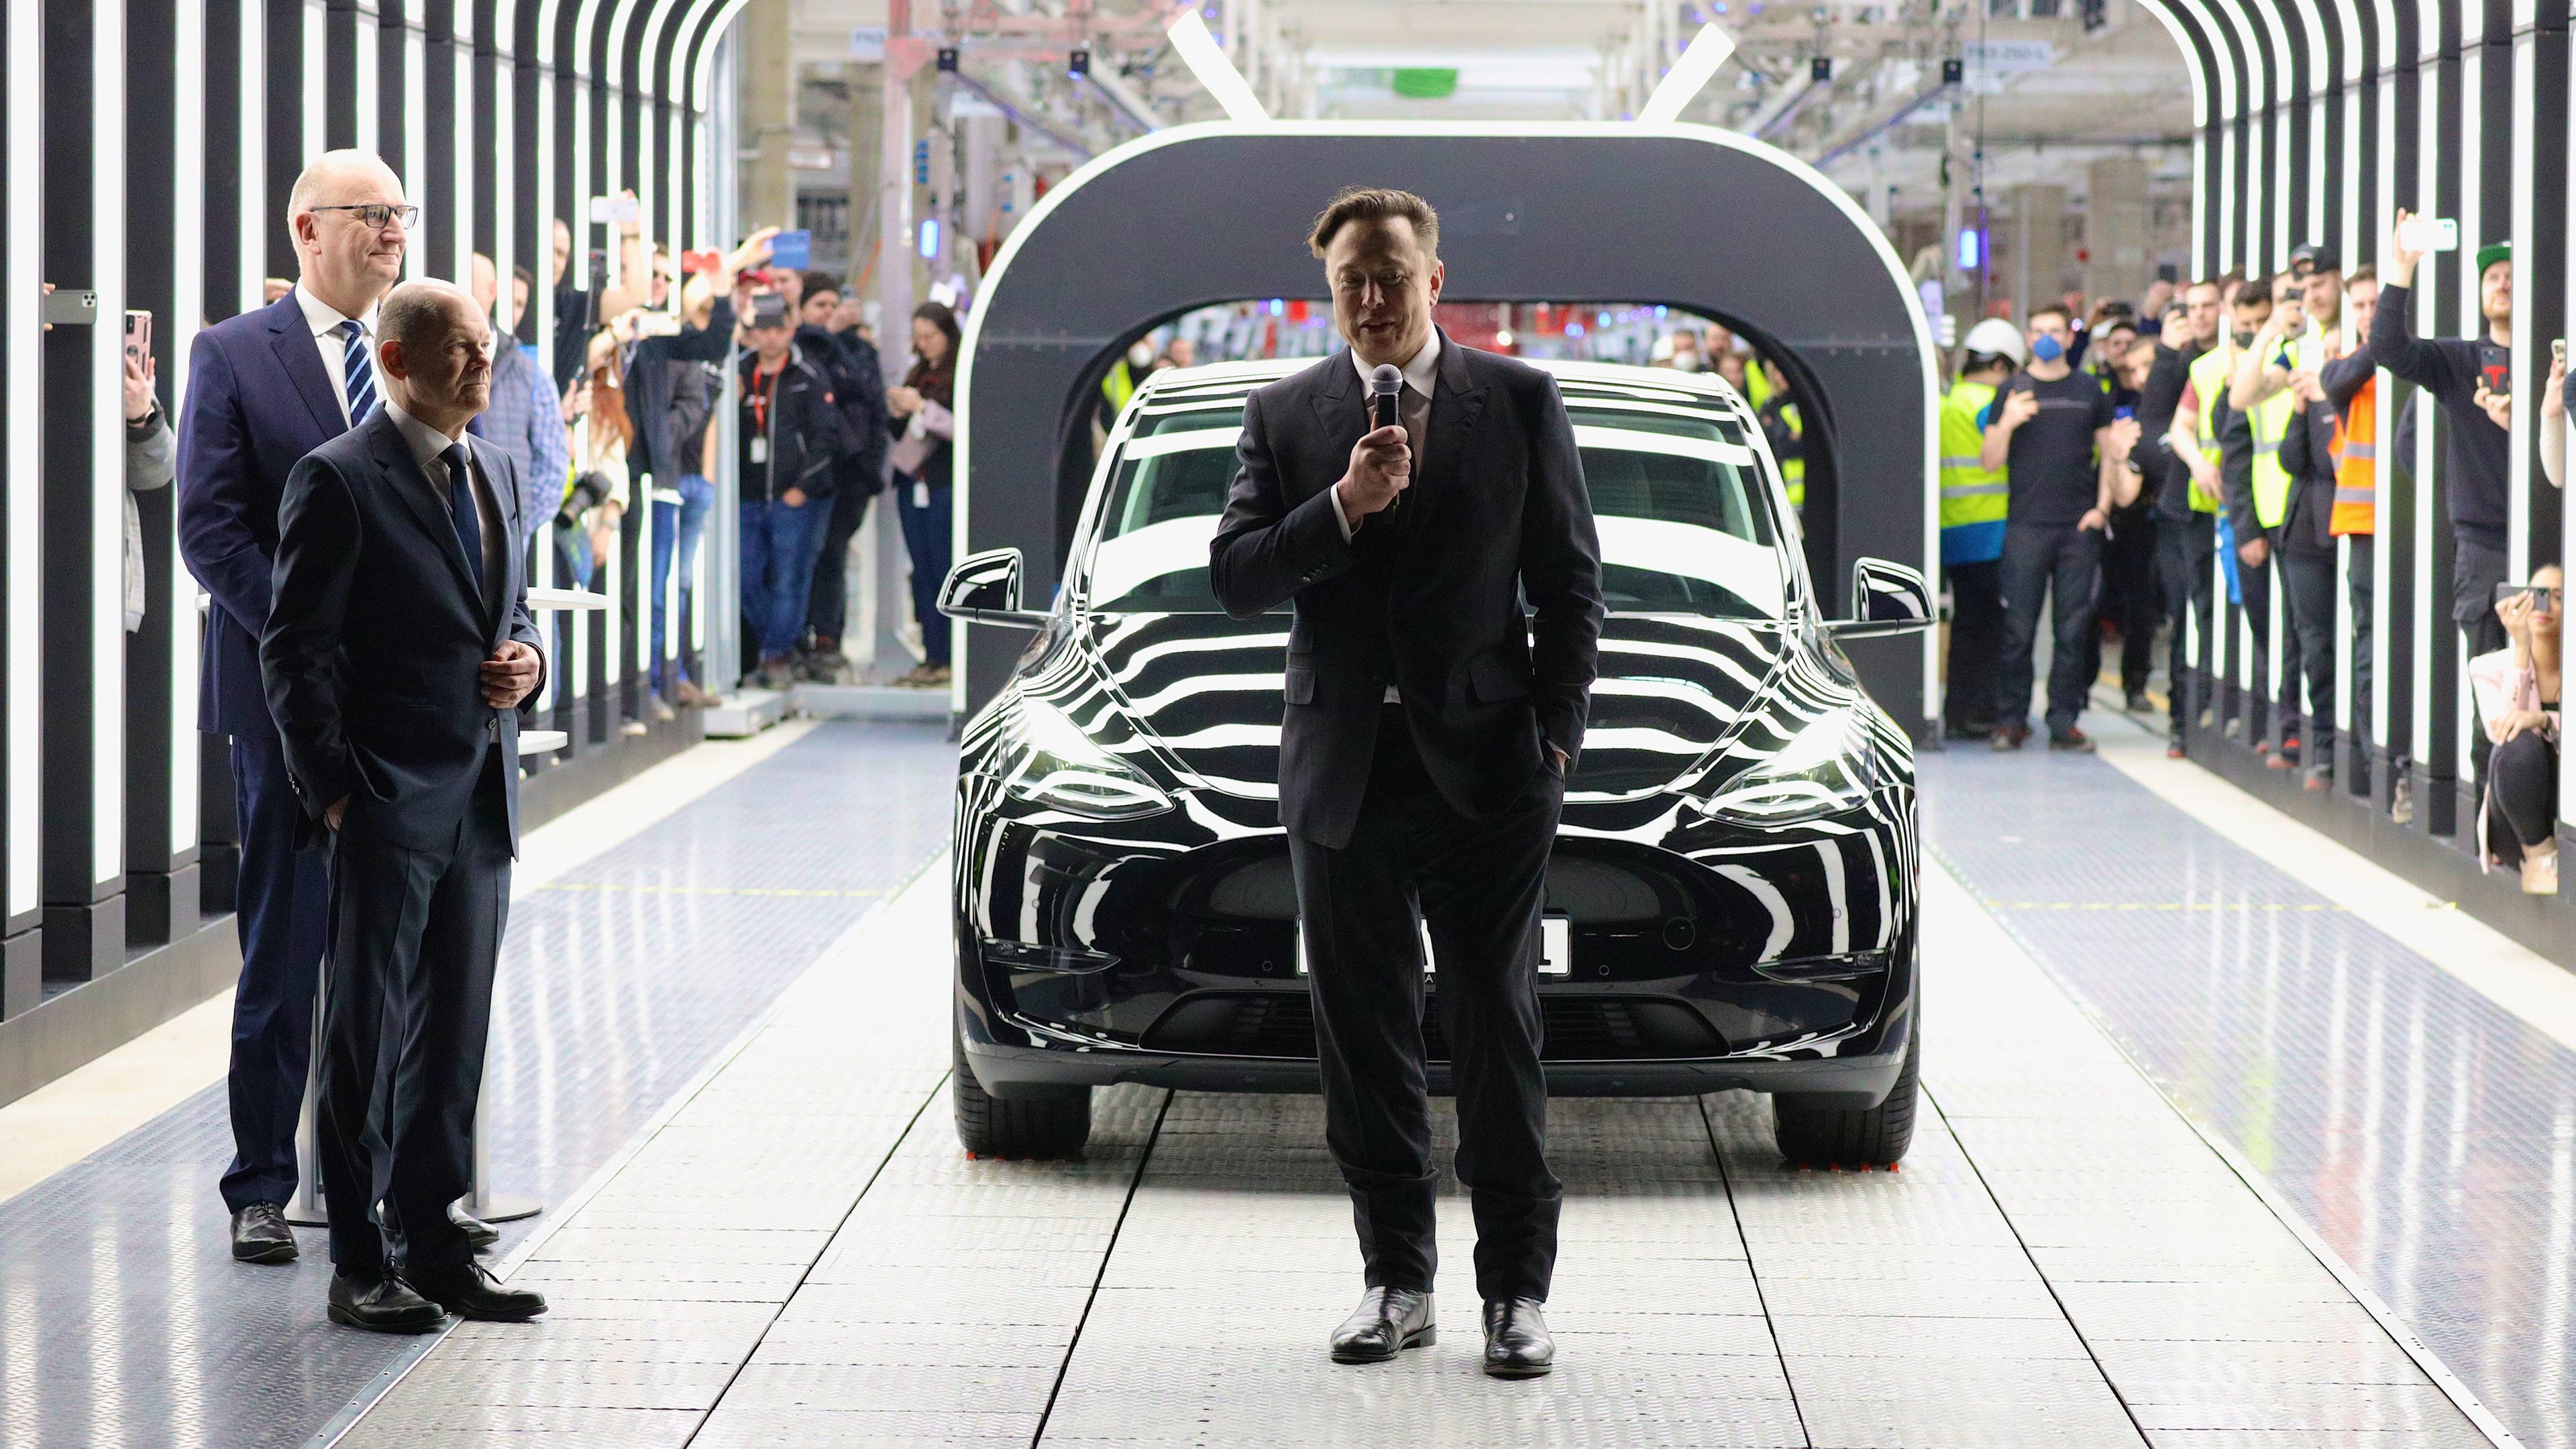 Grünheide bei Berlin, Deutschland, 22.03.2022: Tesla CEO Elon Musk spricht während der Eröffnung der Tesla "Gigafactory" vor einem Tesla auf einem großen Rollband. Bundeskanzler Scholz steht daneben